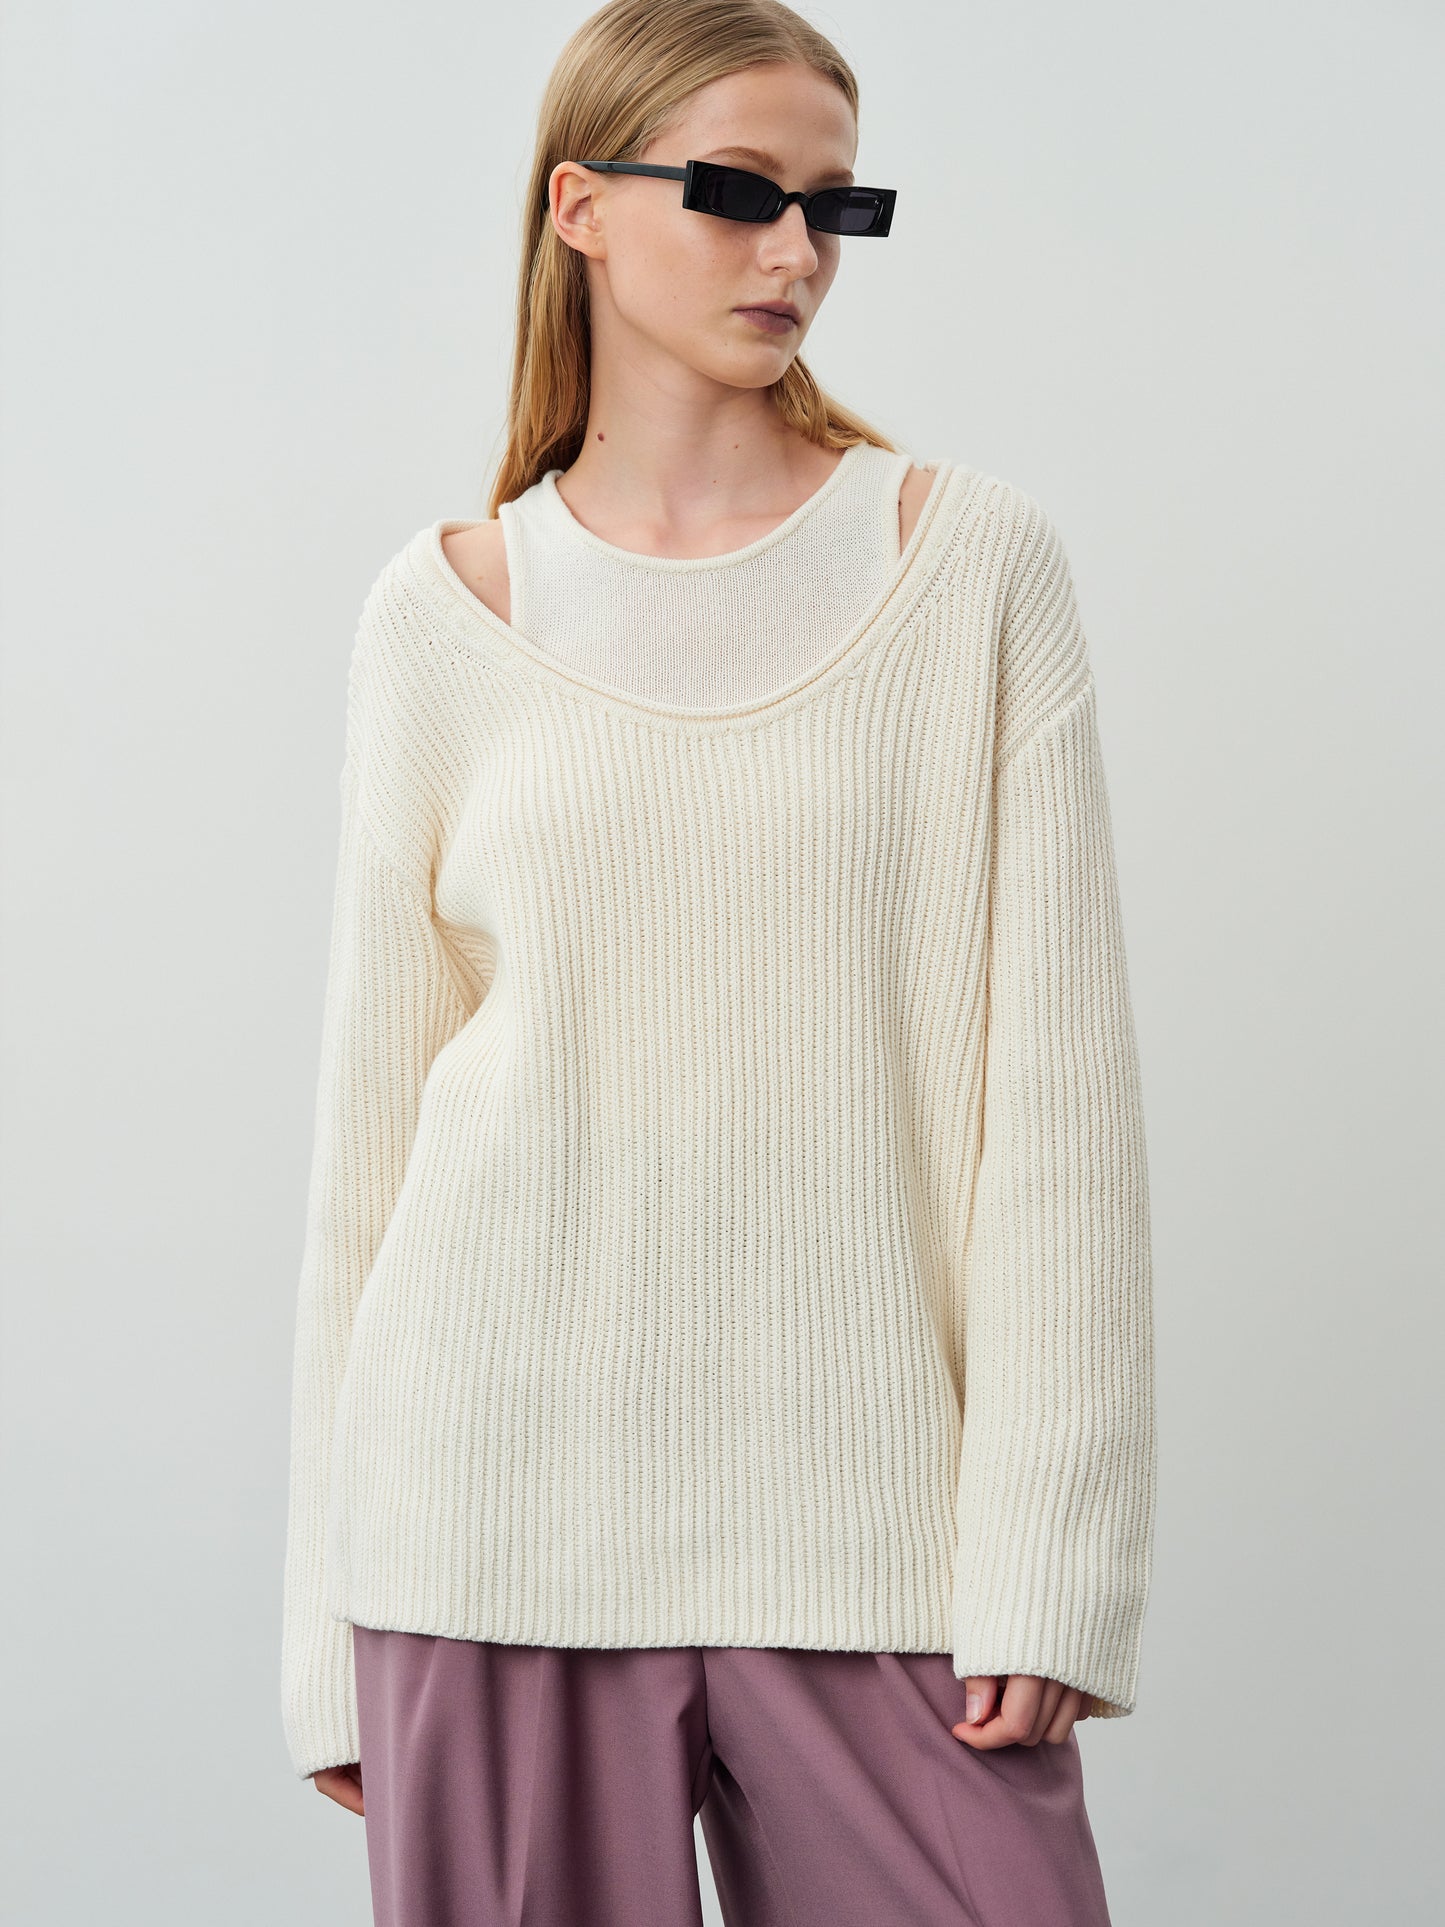 Two-Piece Cotton Knit Sweater Set, Eggnog